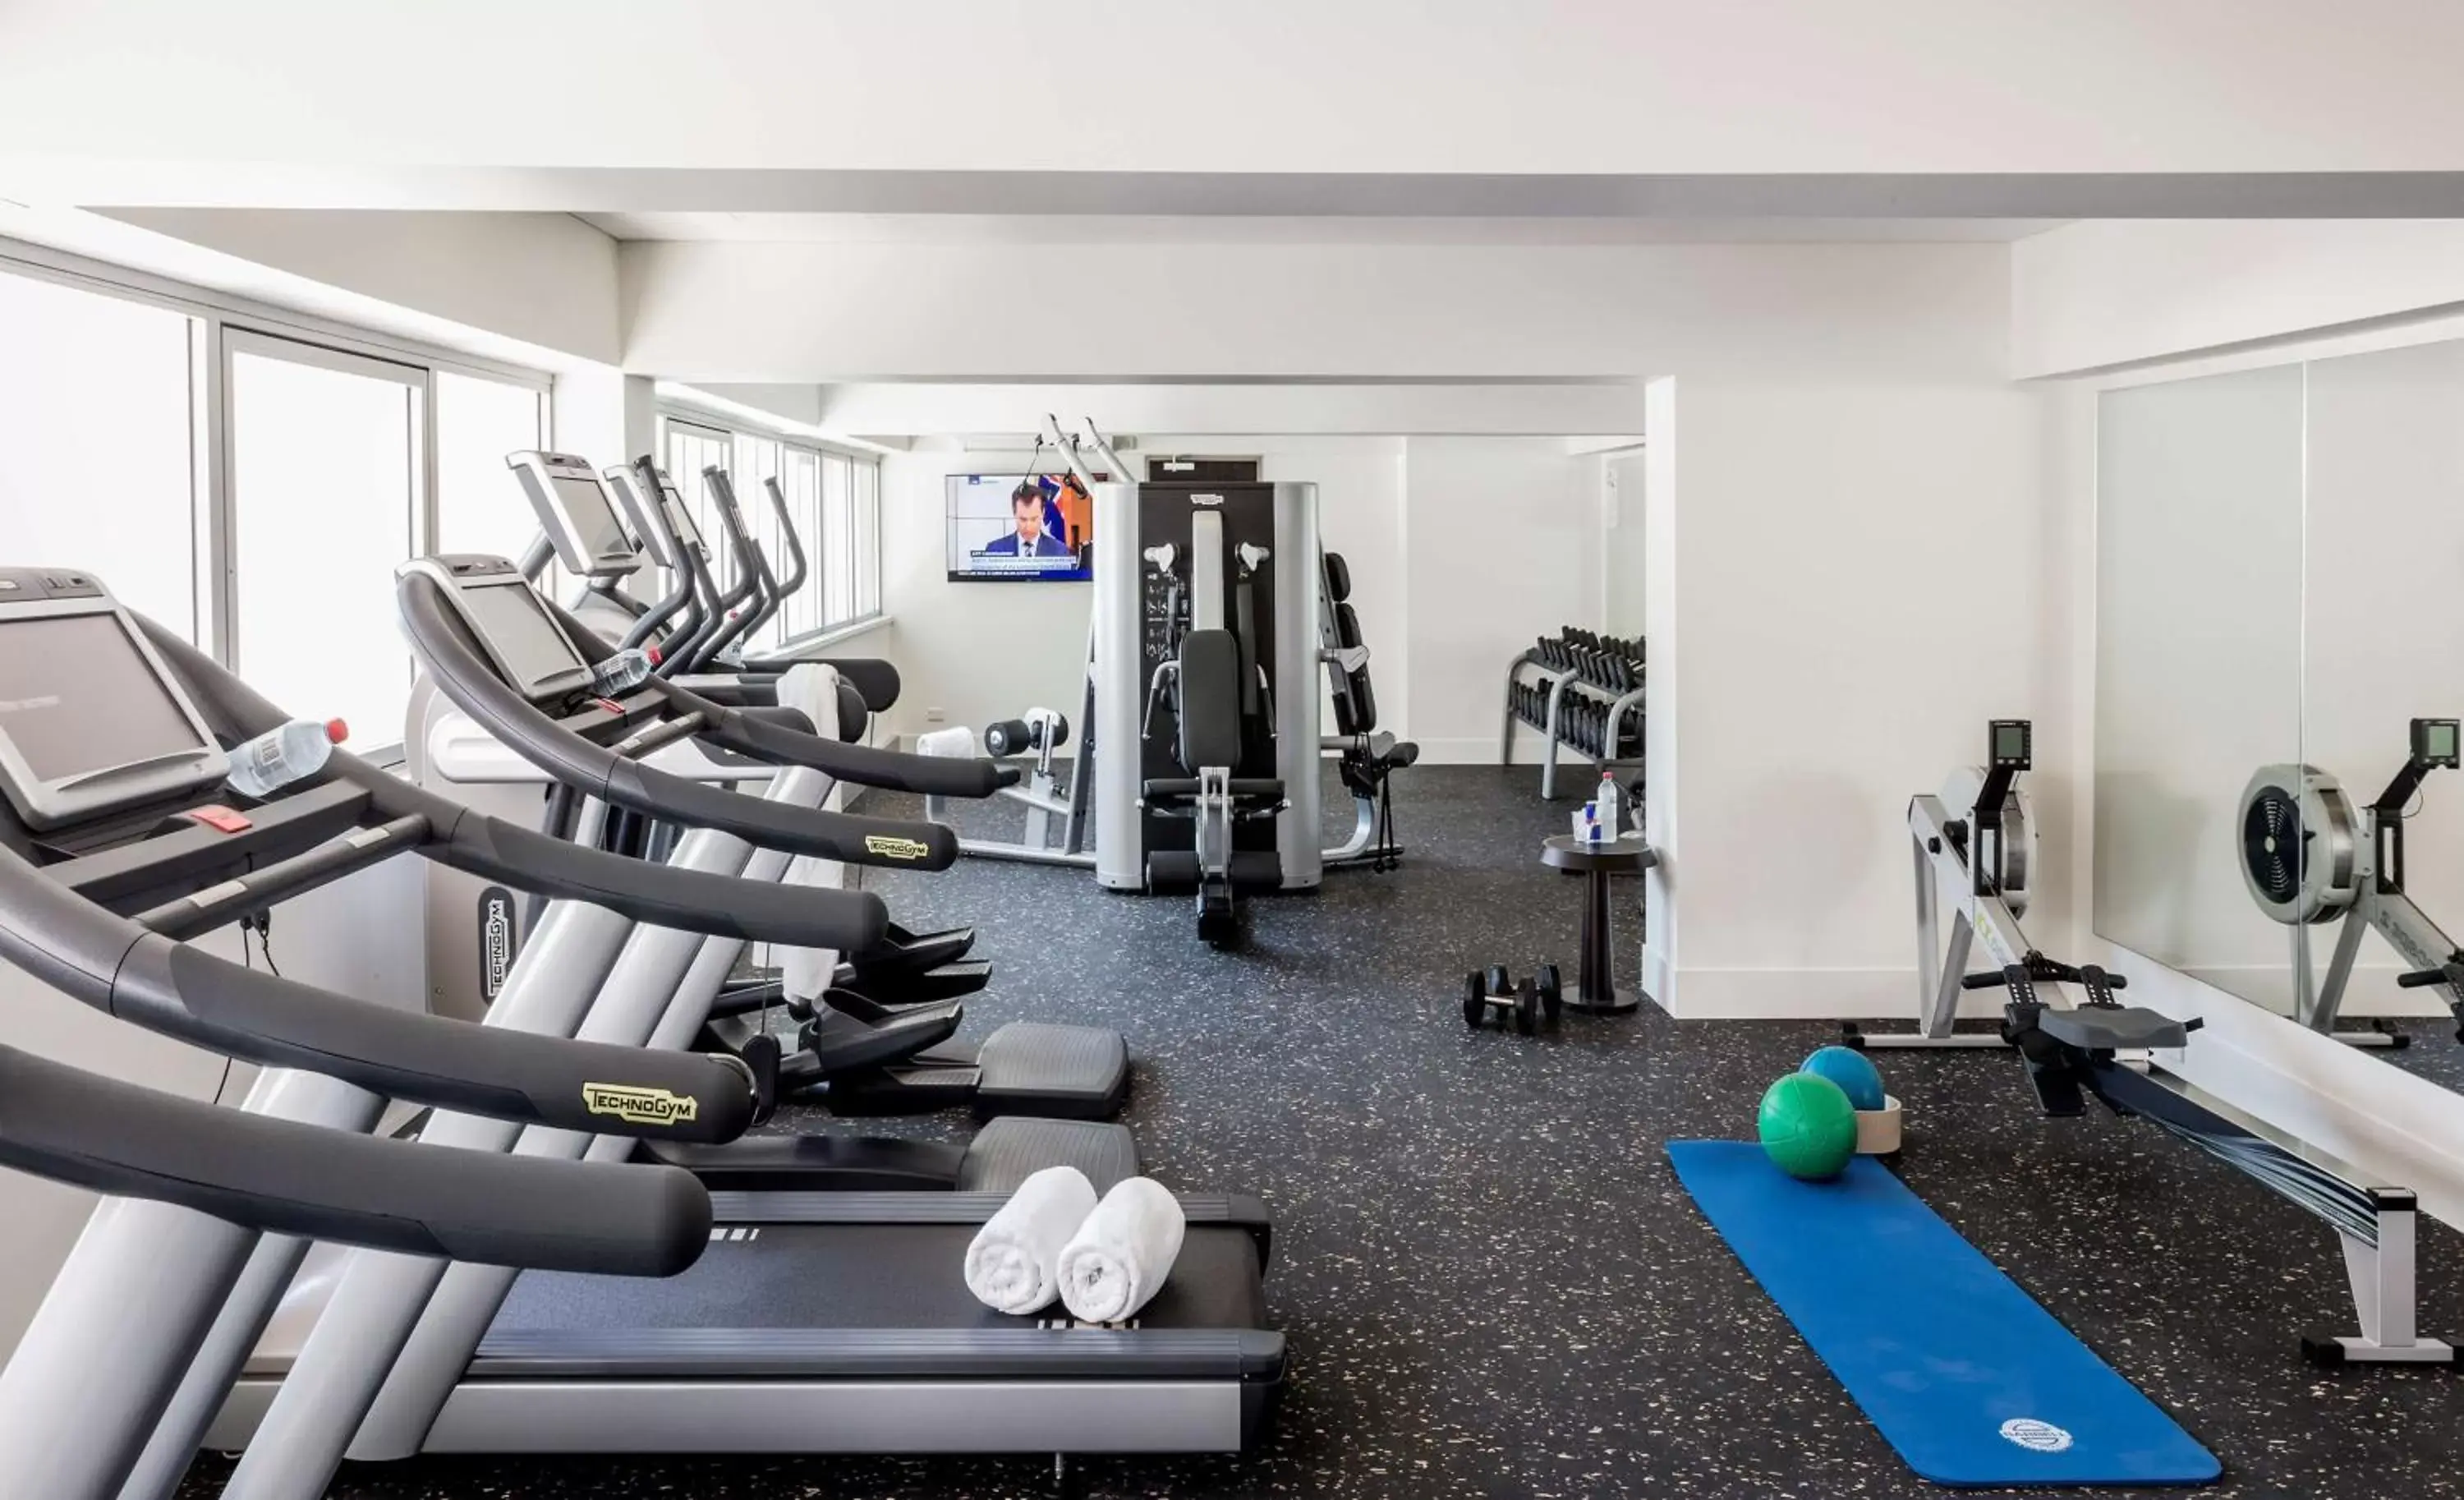 Fitness centre/facilities, Fitness Center/Facilities in Hyatt Regency Brisbane